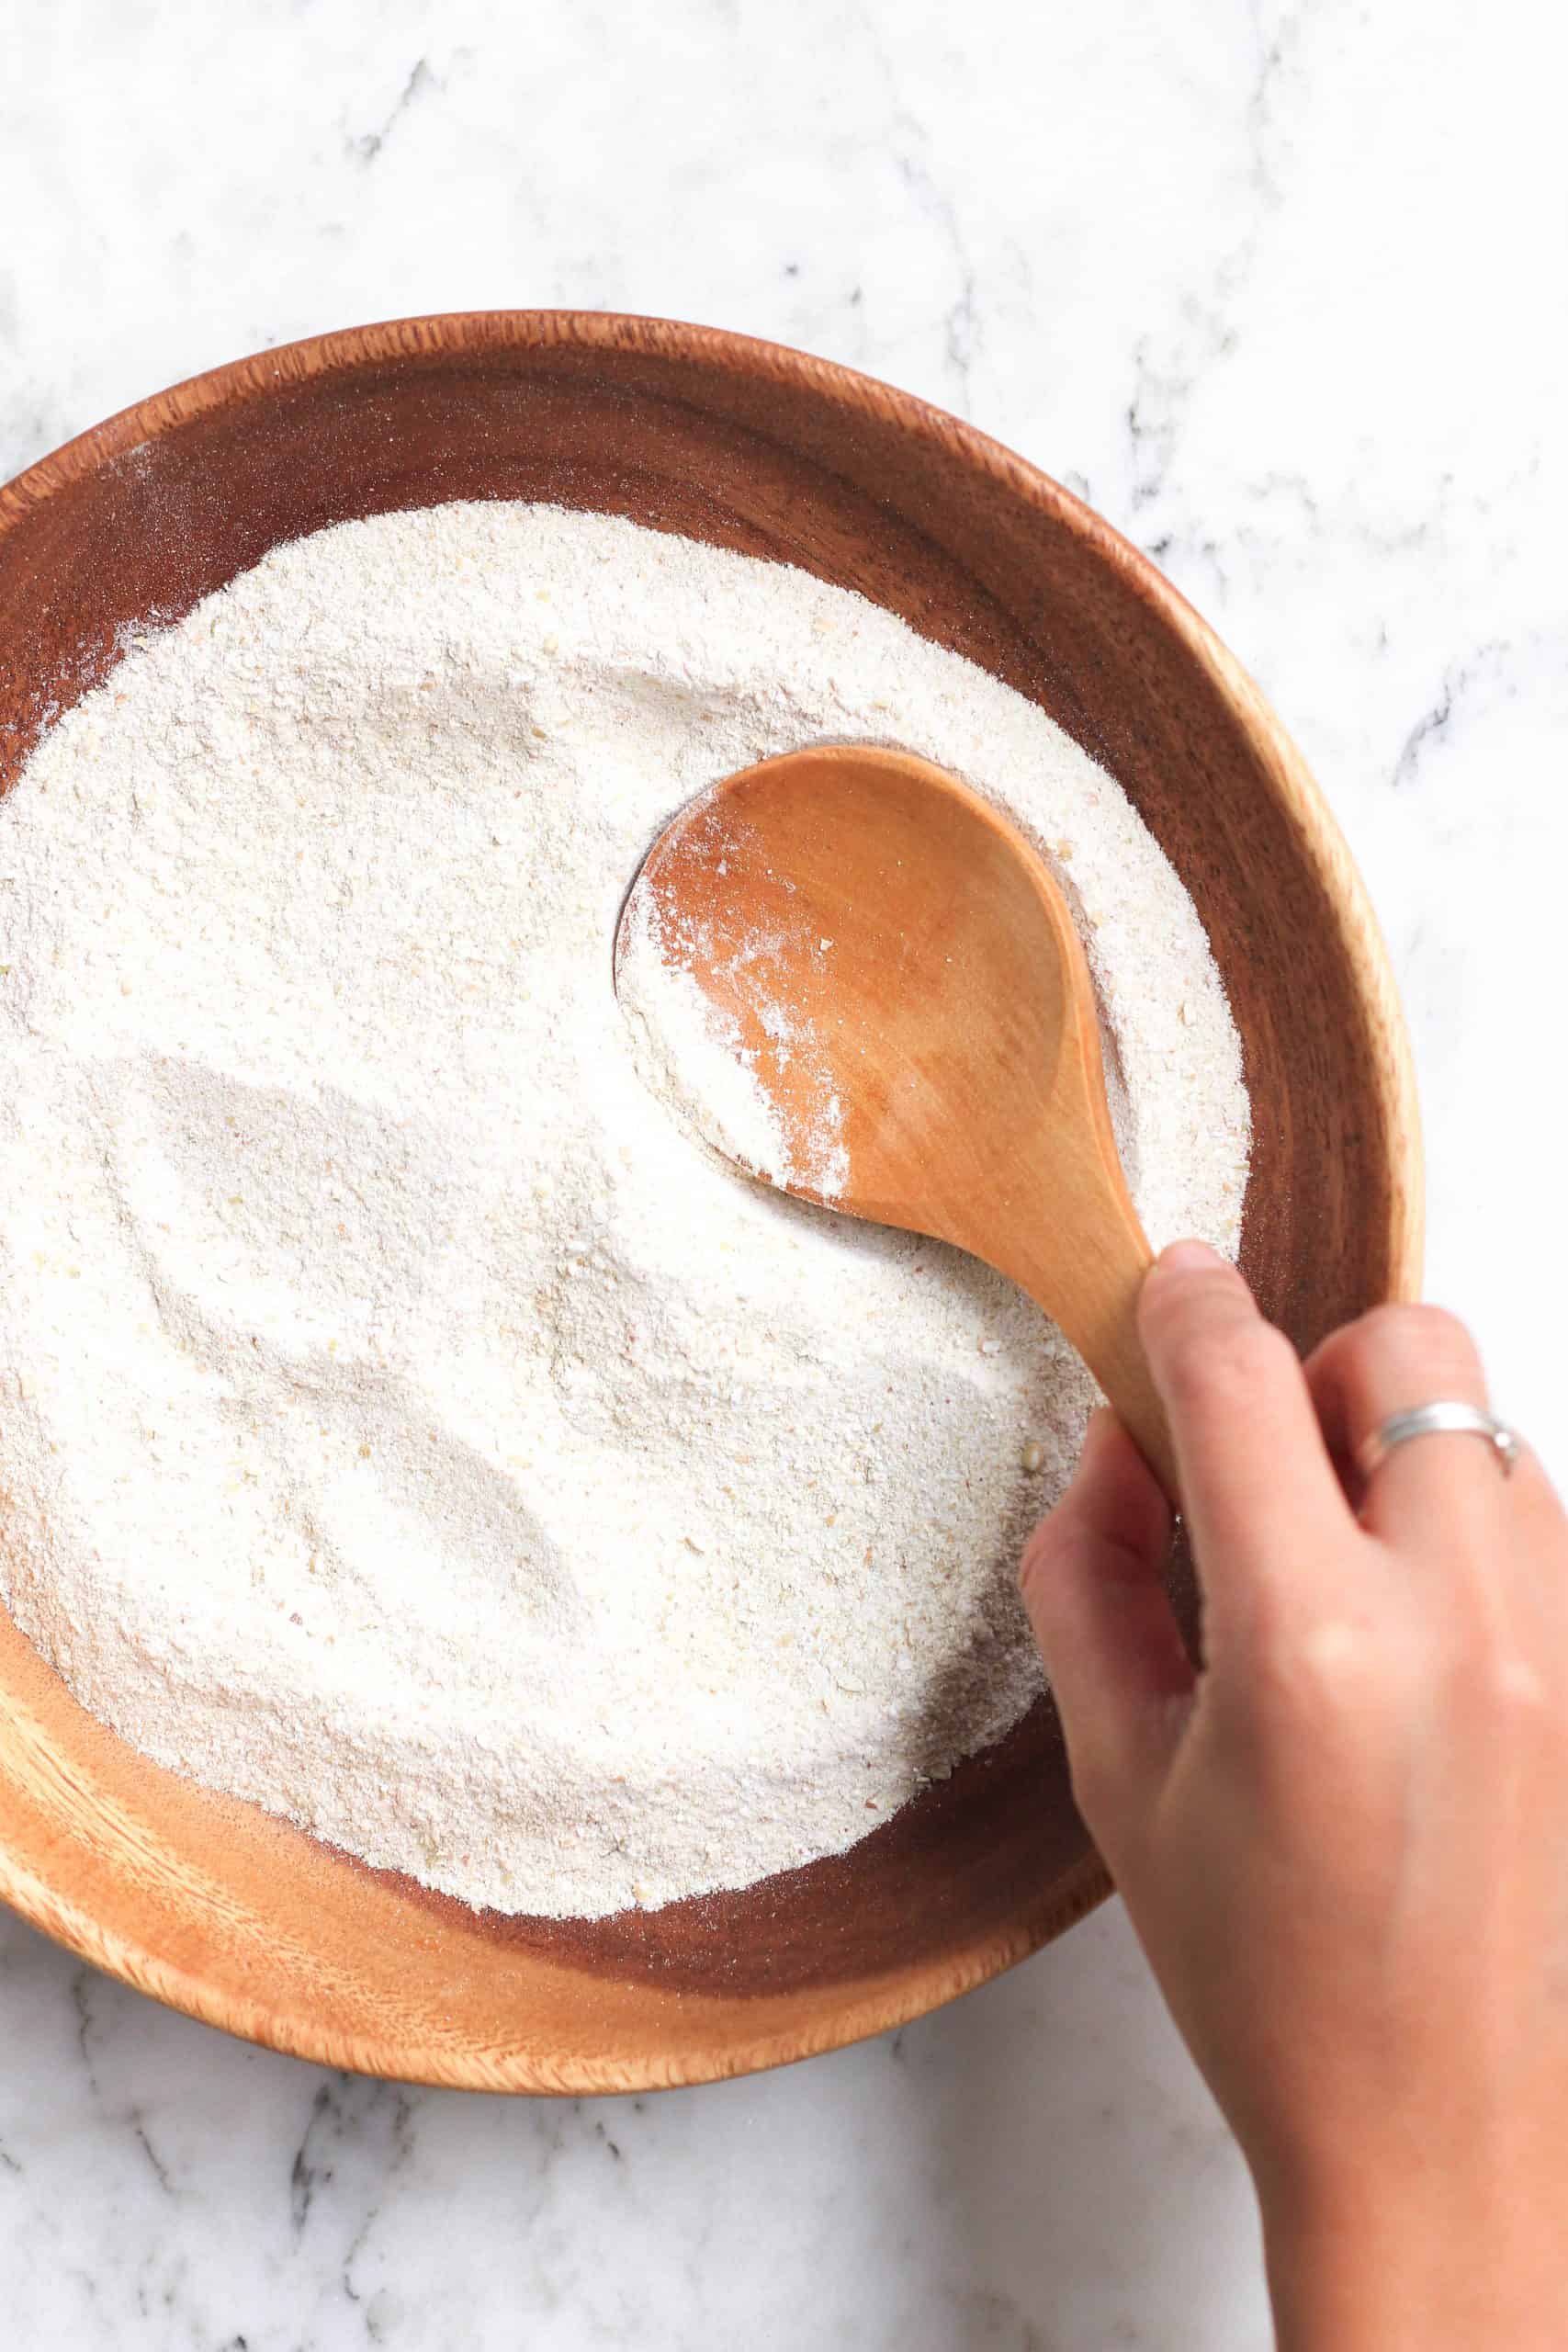 Homemade buckwheat flour in a wooden bowl.